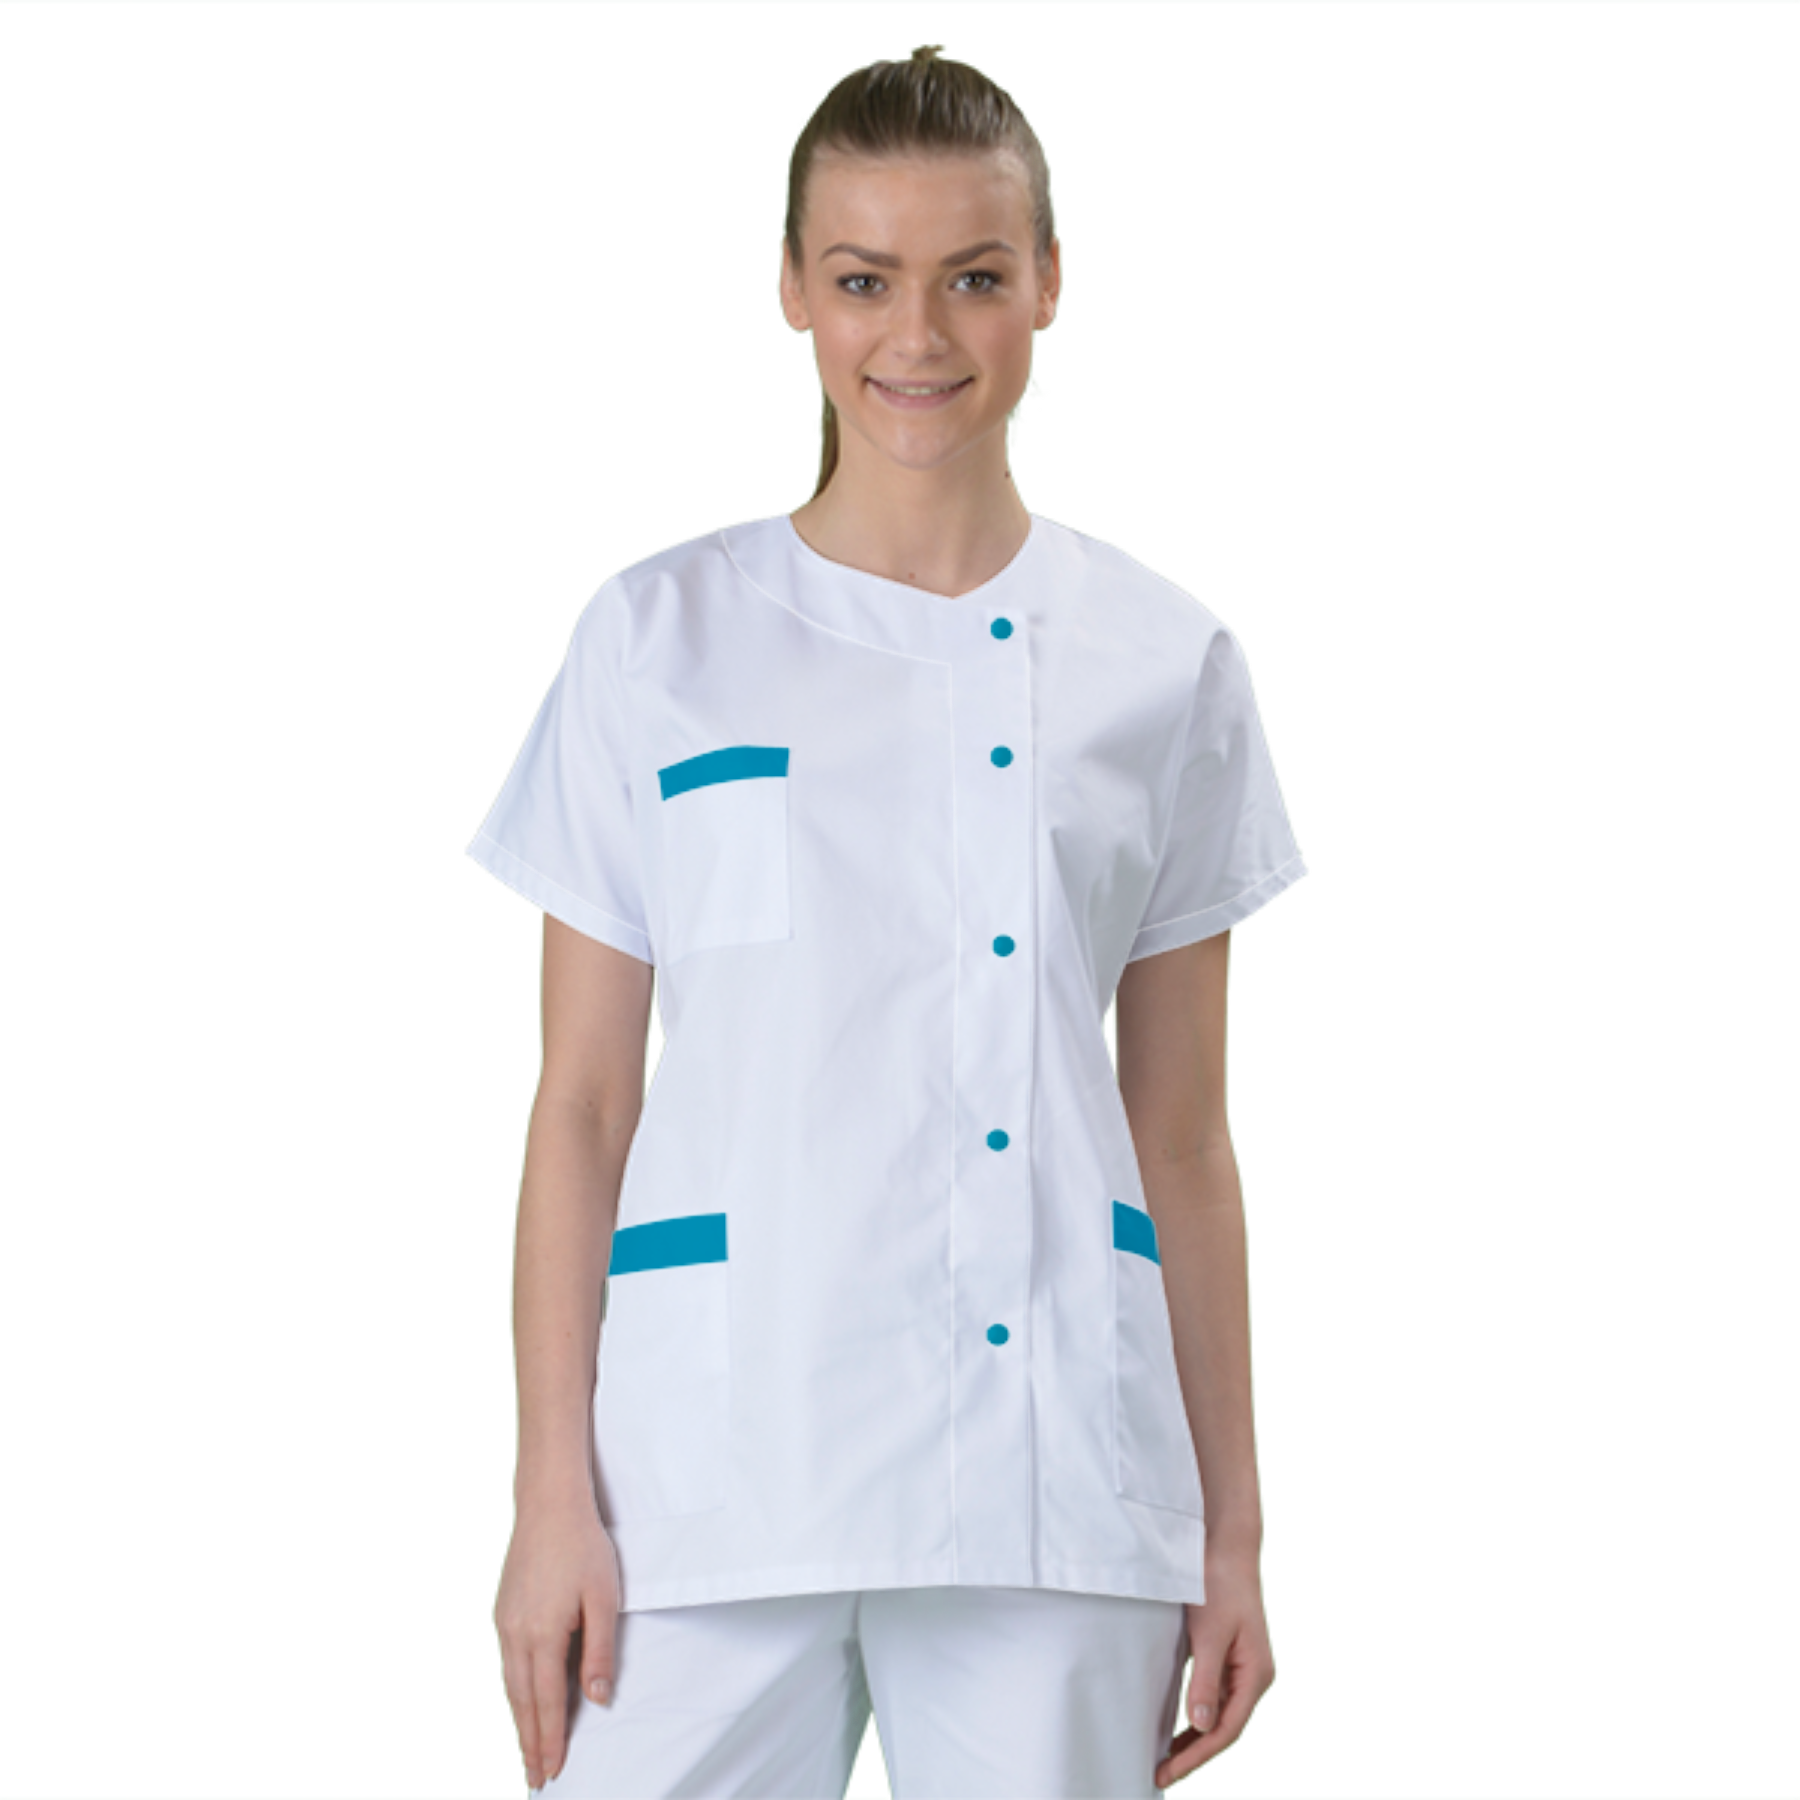 blouse-medicale-col-carre-a-personnaliser acheté - par Bernadette - le 31-01-2020